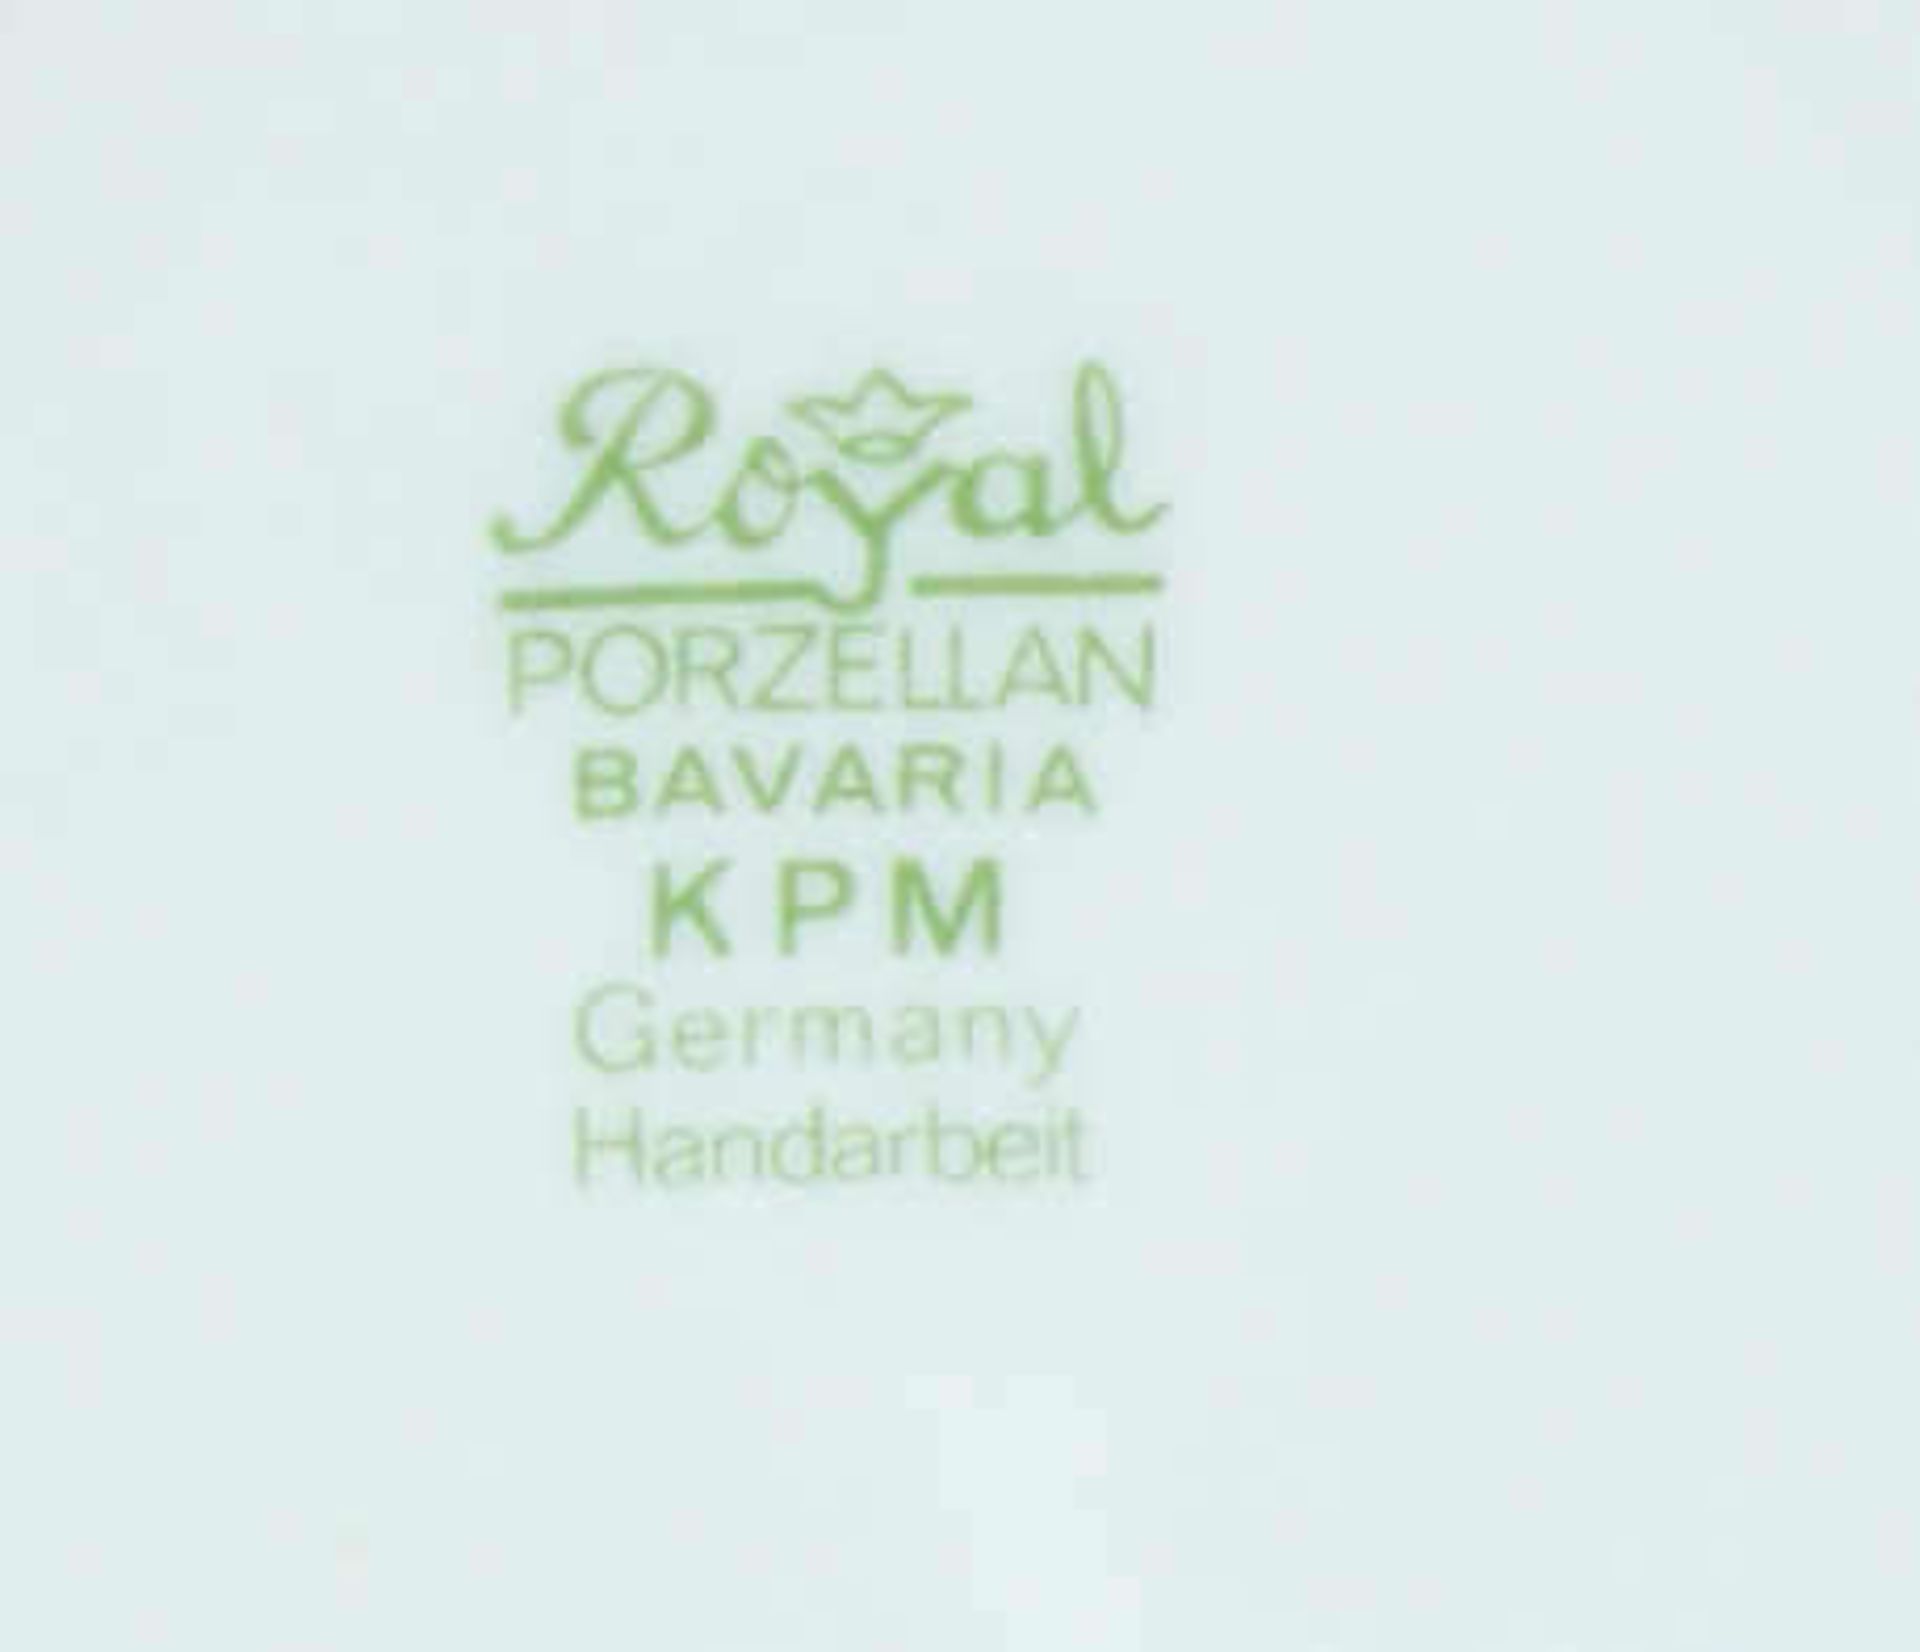 3 Porzellanvasen "Royal KPM Bavaria", versch. Größen und Ausführung - Image 2 of 2